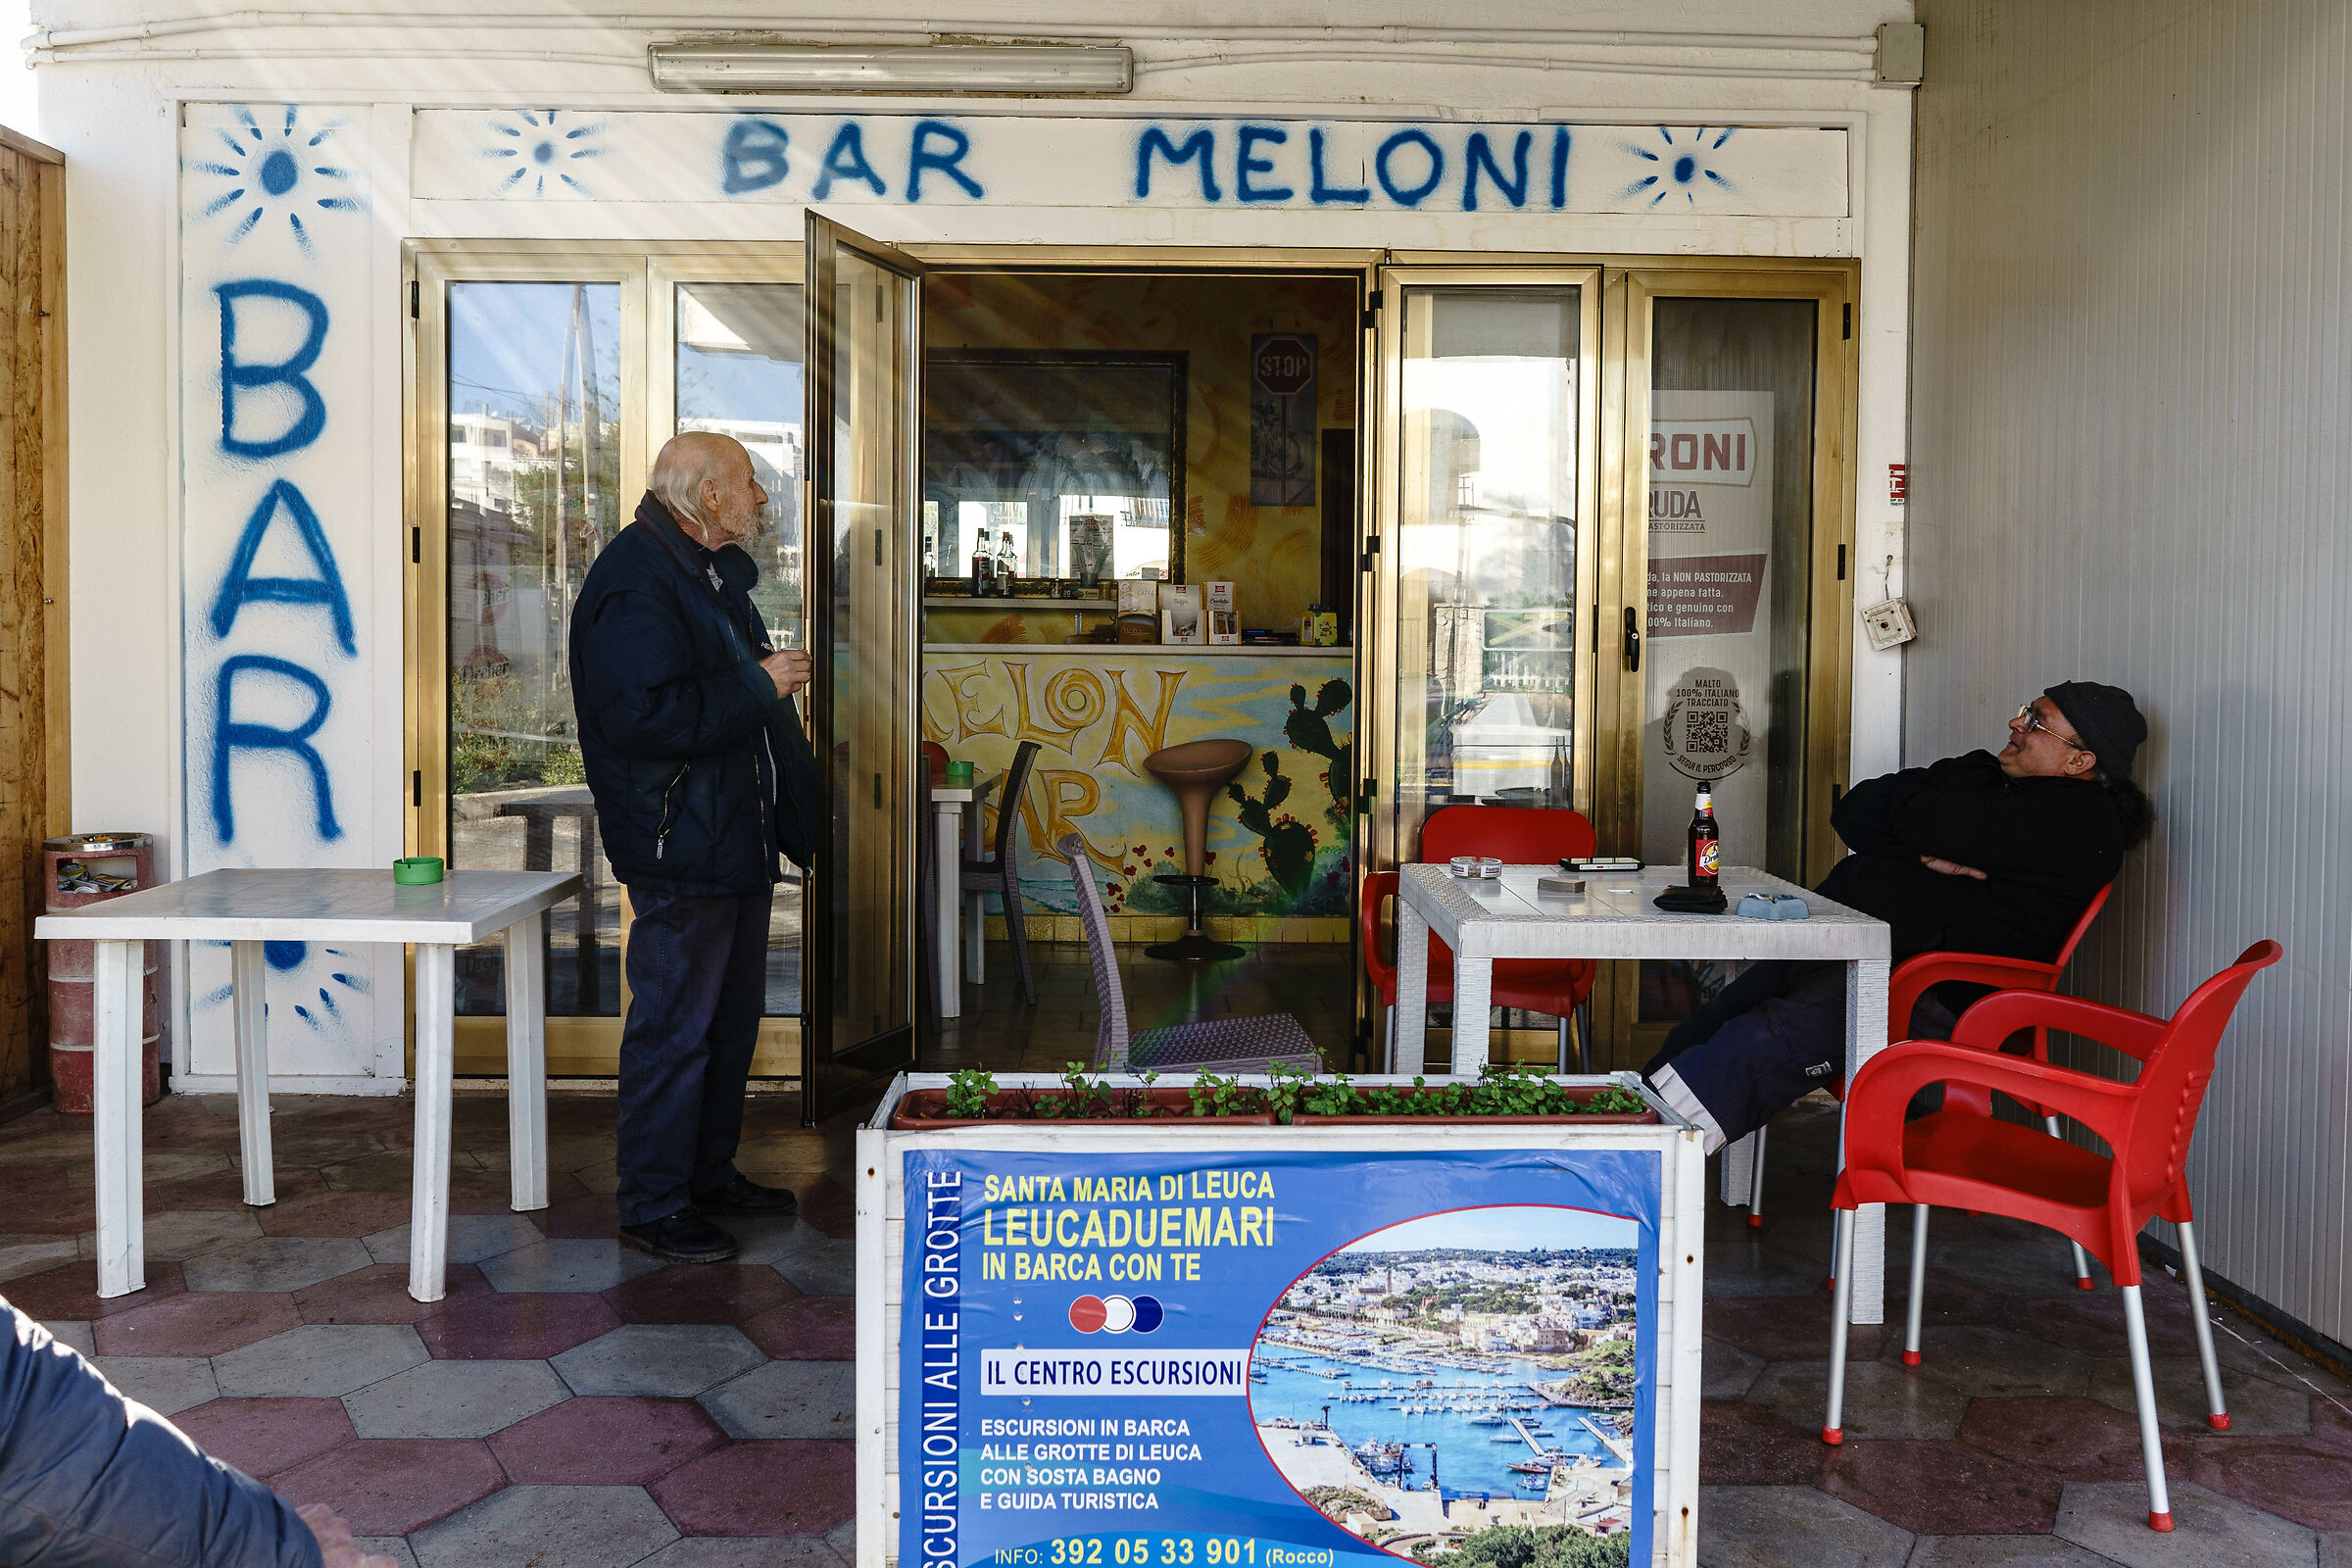 A drink at Bar Meloni......